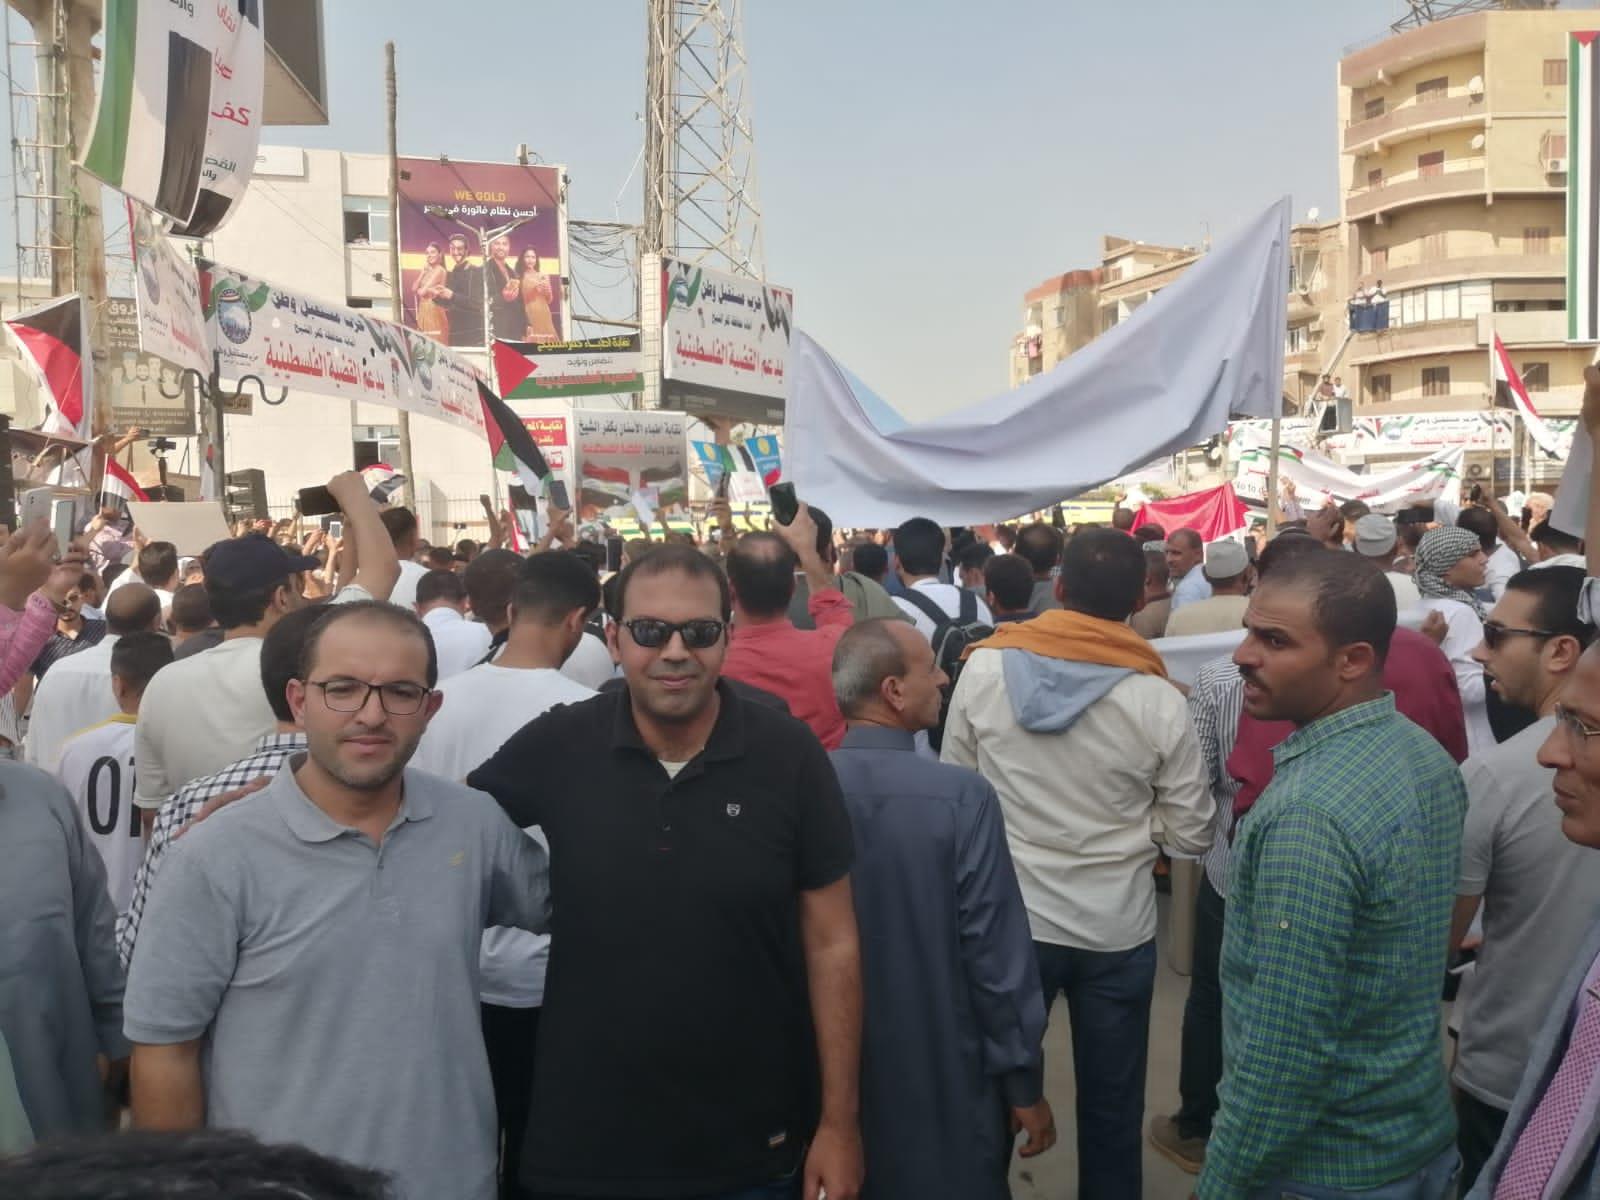 الحركة الوطنية بكفر الشيخ تشارك في مسيرات دعم فلسطين وترفض مخططات التوطين في سيناء 